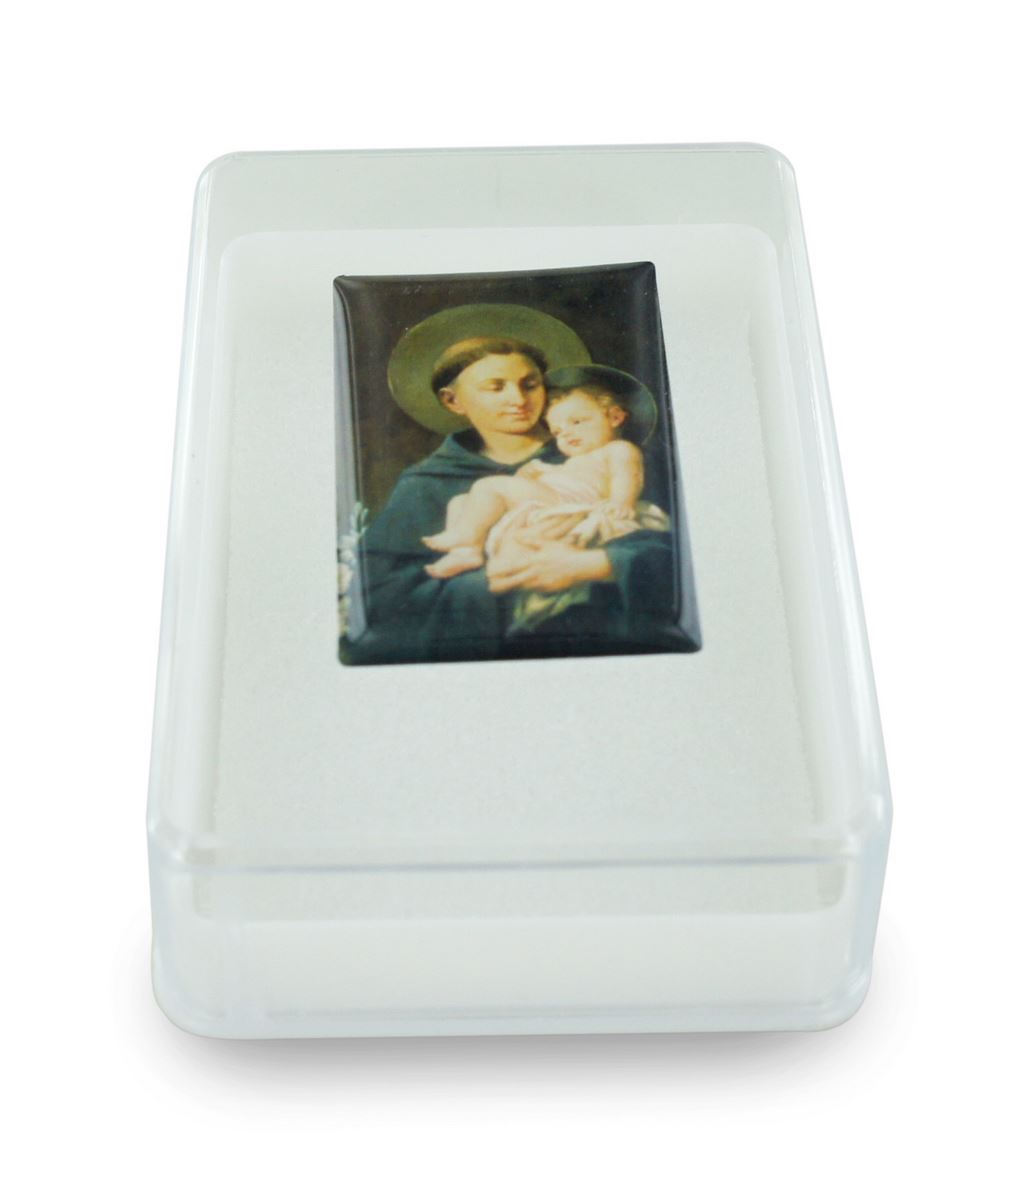 scatola portarosario con l'immagine di sant'antonio - 5 x 7 cm